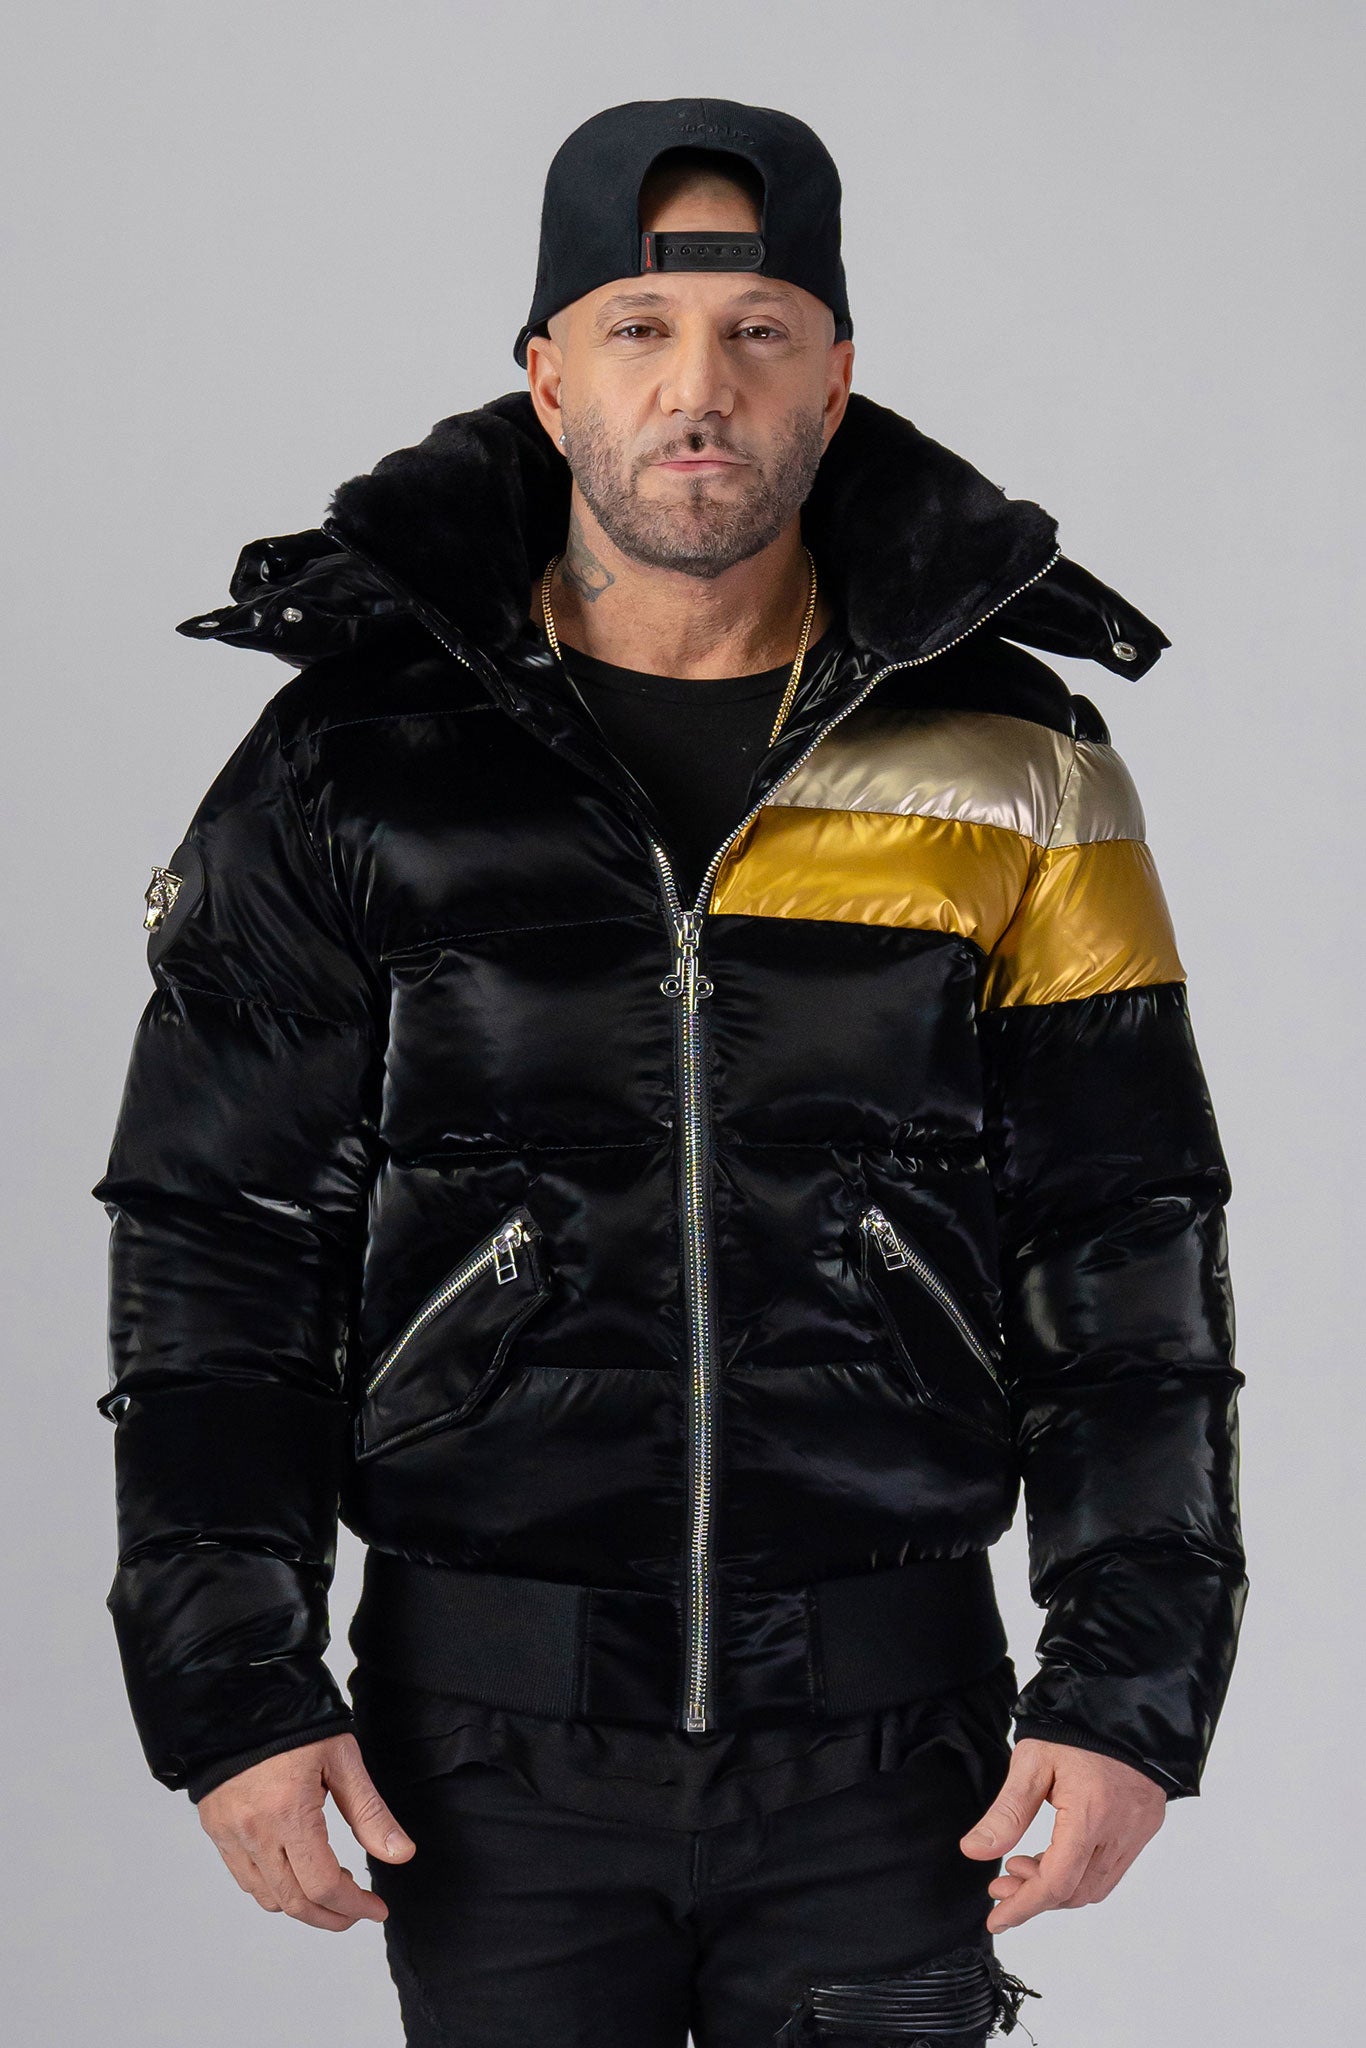 Woodpecker Men's Woody Bomber Winter coat. High-end Canadian designer winter coat for men in “Firebird